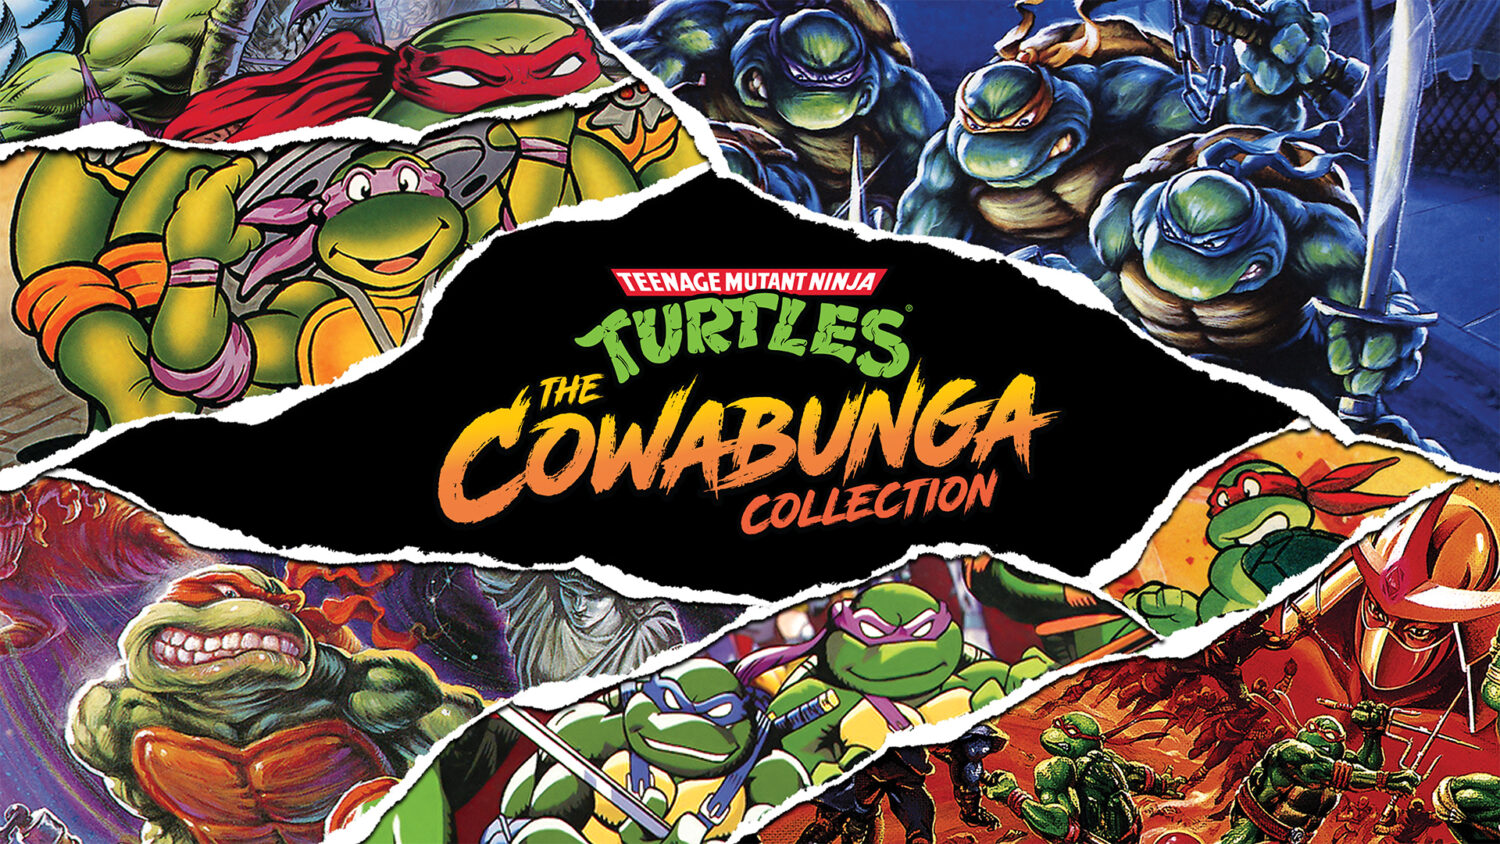 Teenage Mutant Ninja Turtles - Cowabunga Collection - Nintendo Switch eShop